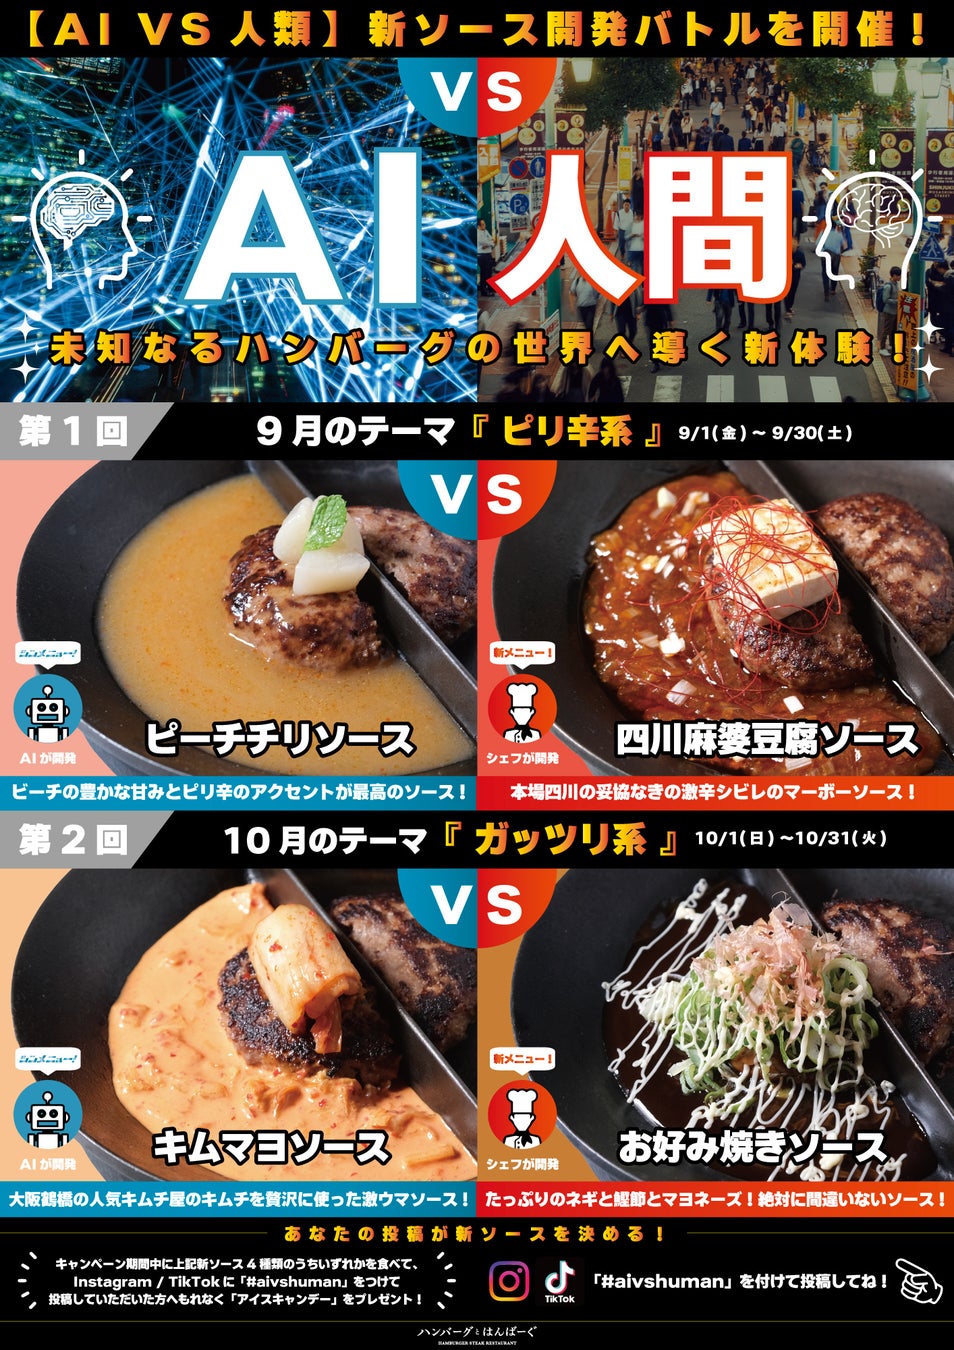 渋谷ハンバーグ専門店「ハンバーグとはんばーぐ」が贈る “AI vs 人間” ソースバトルを開催